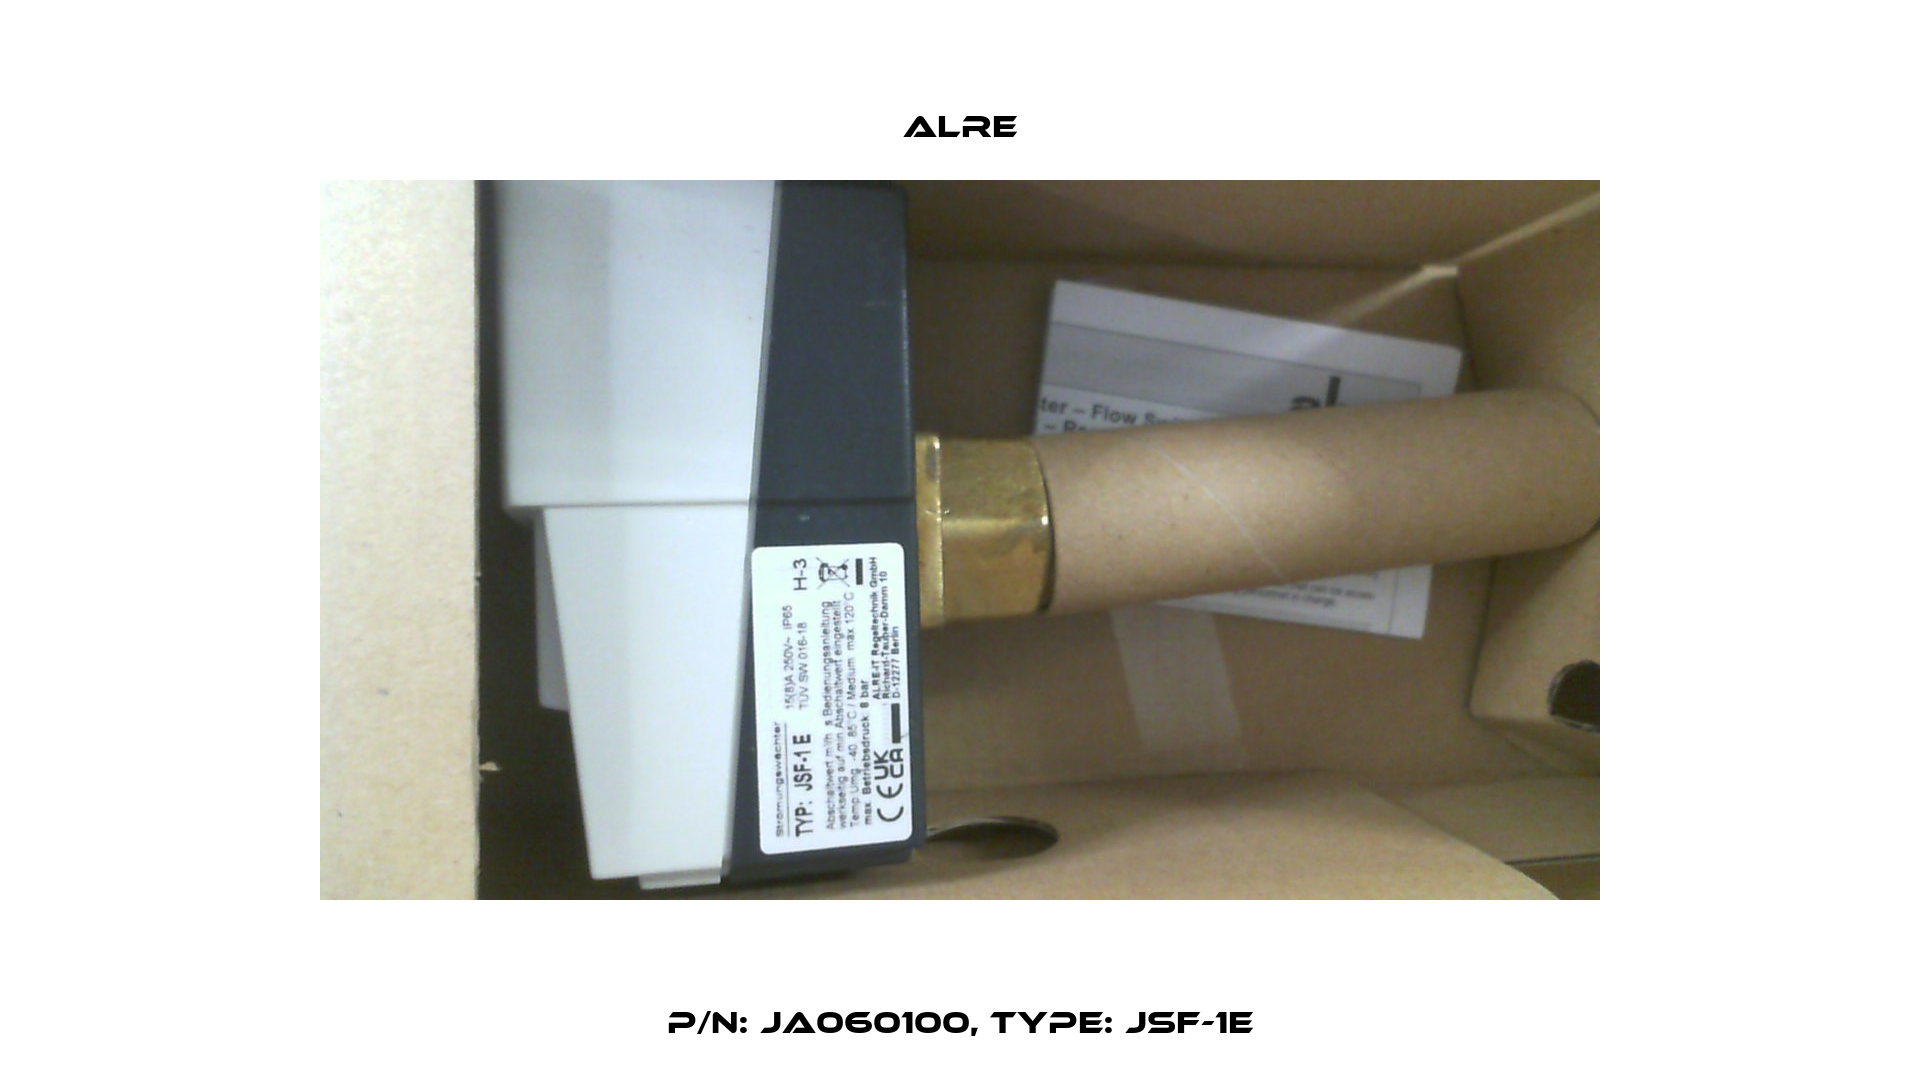 P/N: JA060100, Type: JSF-1E Alre